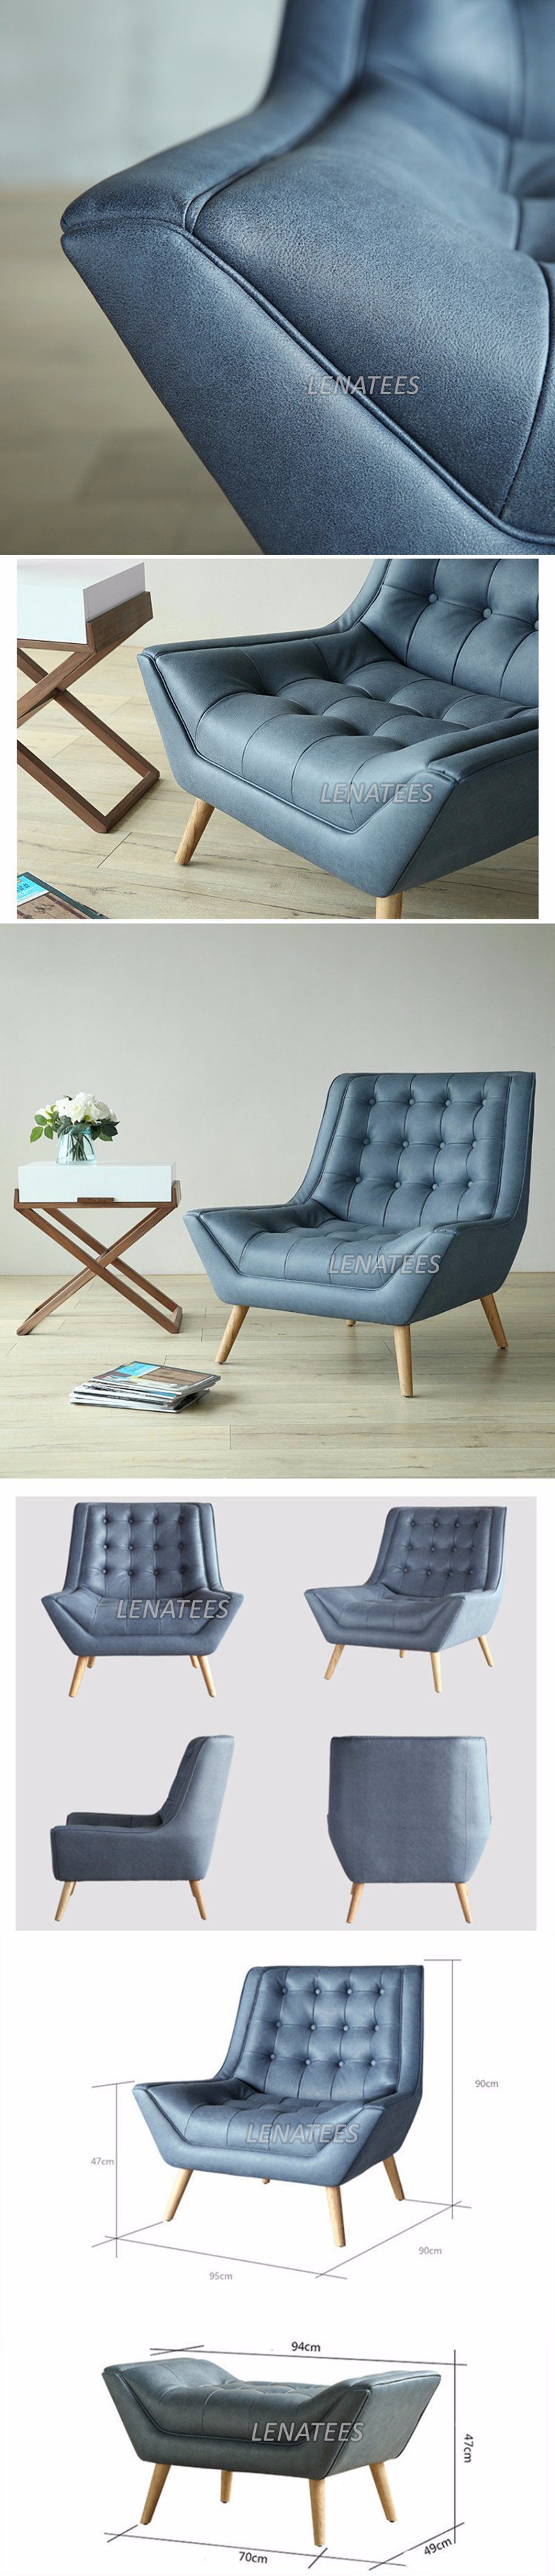 DC1018 European Furniture Living Room Chair Lounge Chair